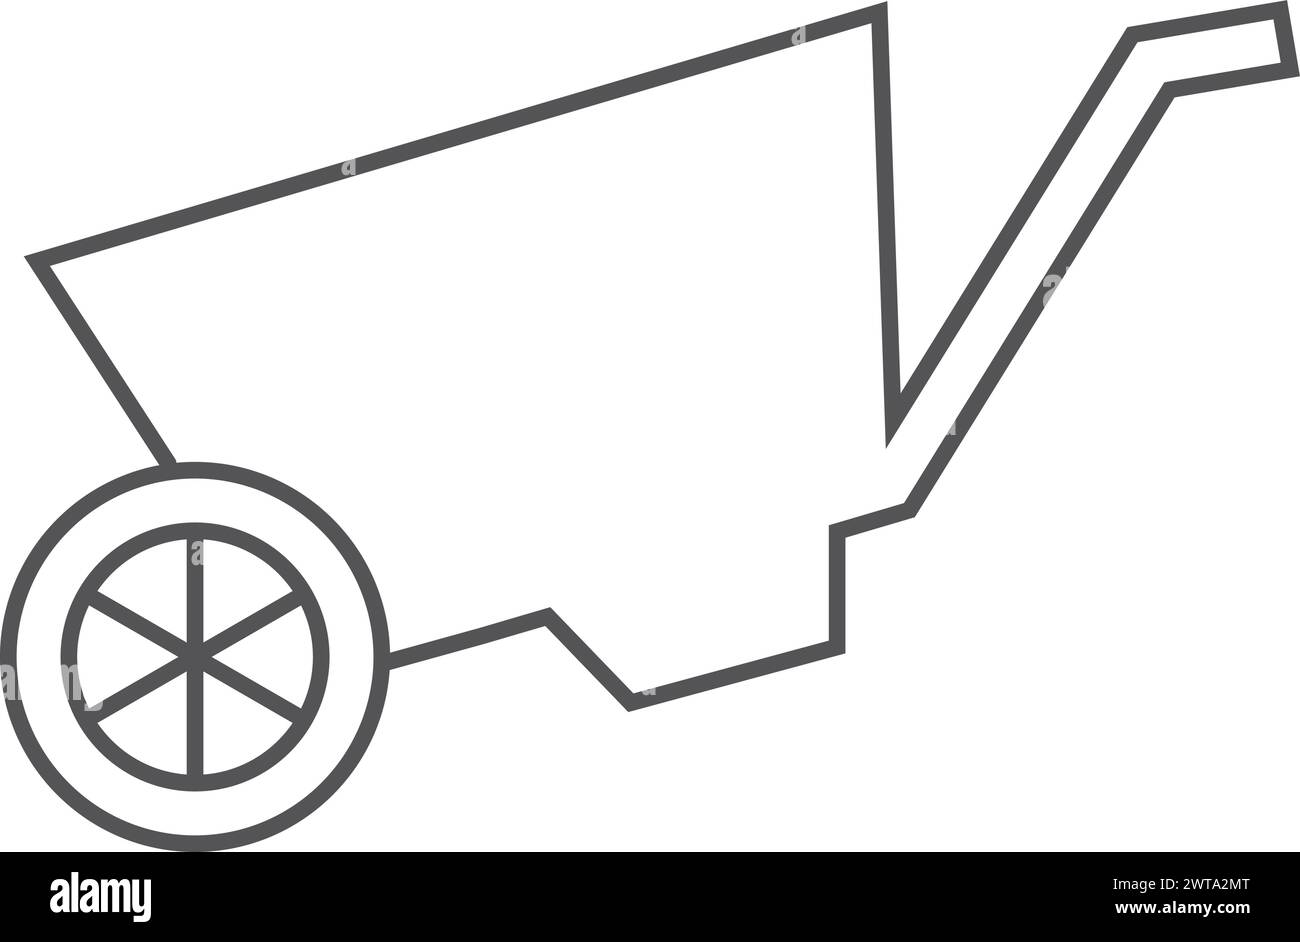 Schubkarre-Symbol. Symbol für die Werkzeuglinie des Landwirts oder Gärtners Stock Vektor